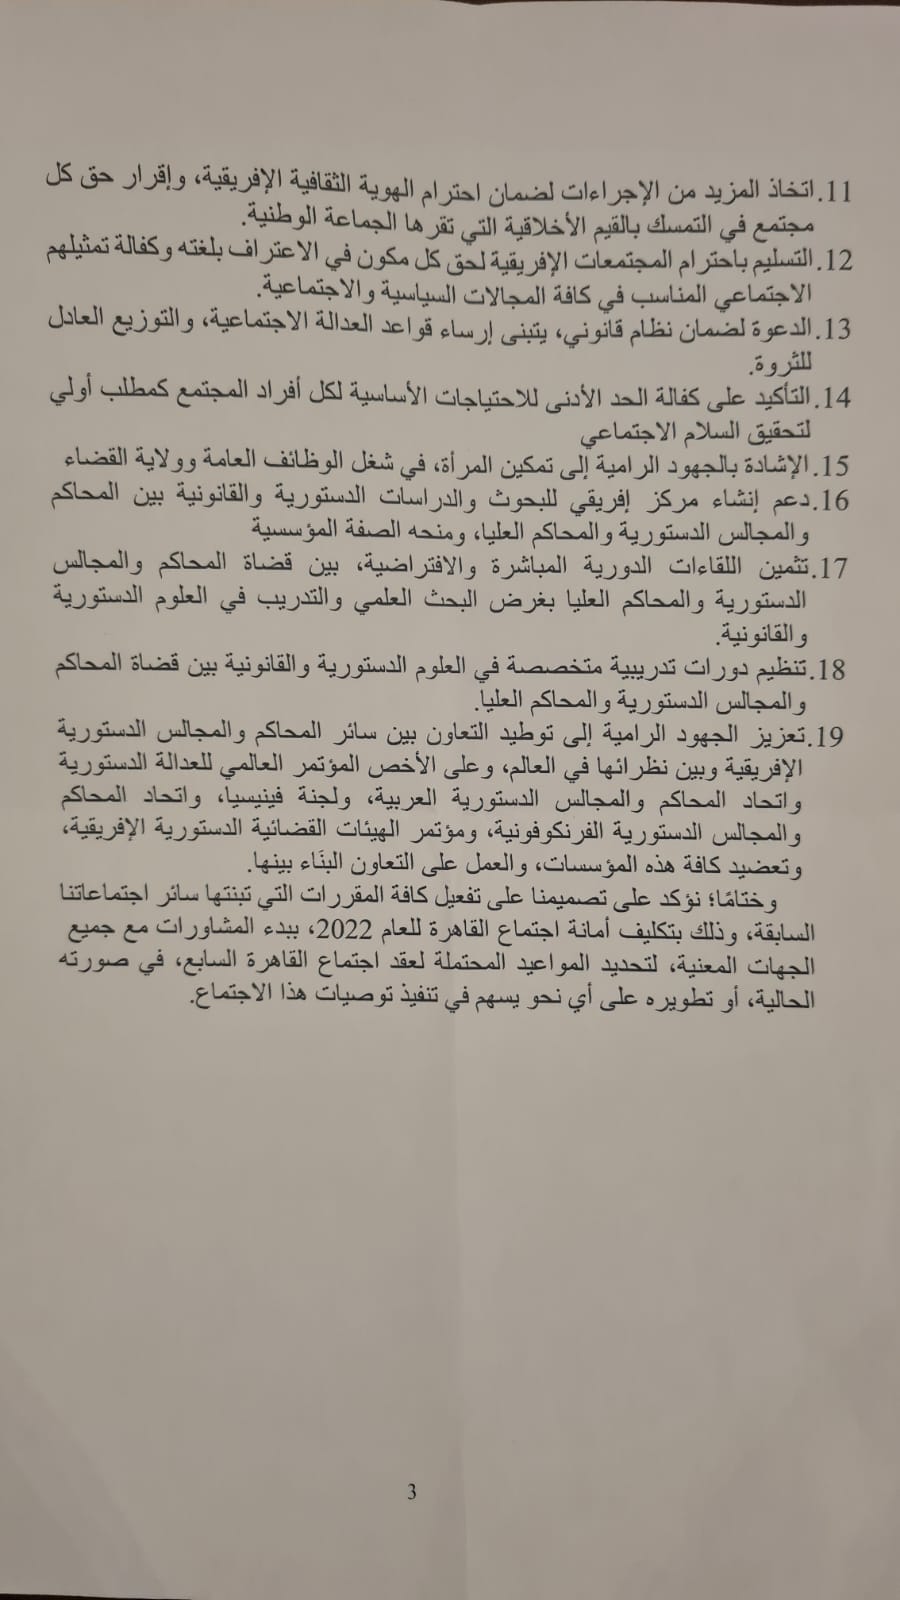 نتائج اجتماع القاهرة السادس لرؤساء المحاكم الدستورية والمحاكم العليا 3